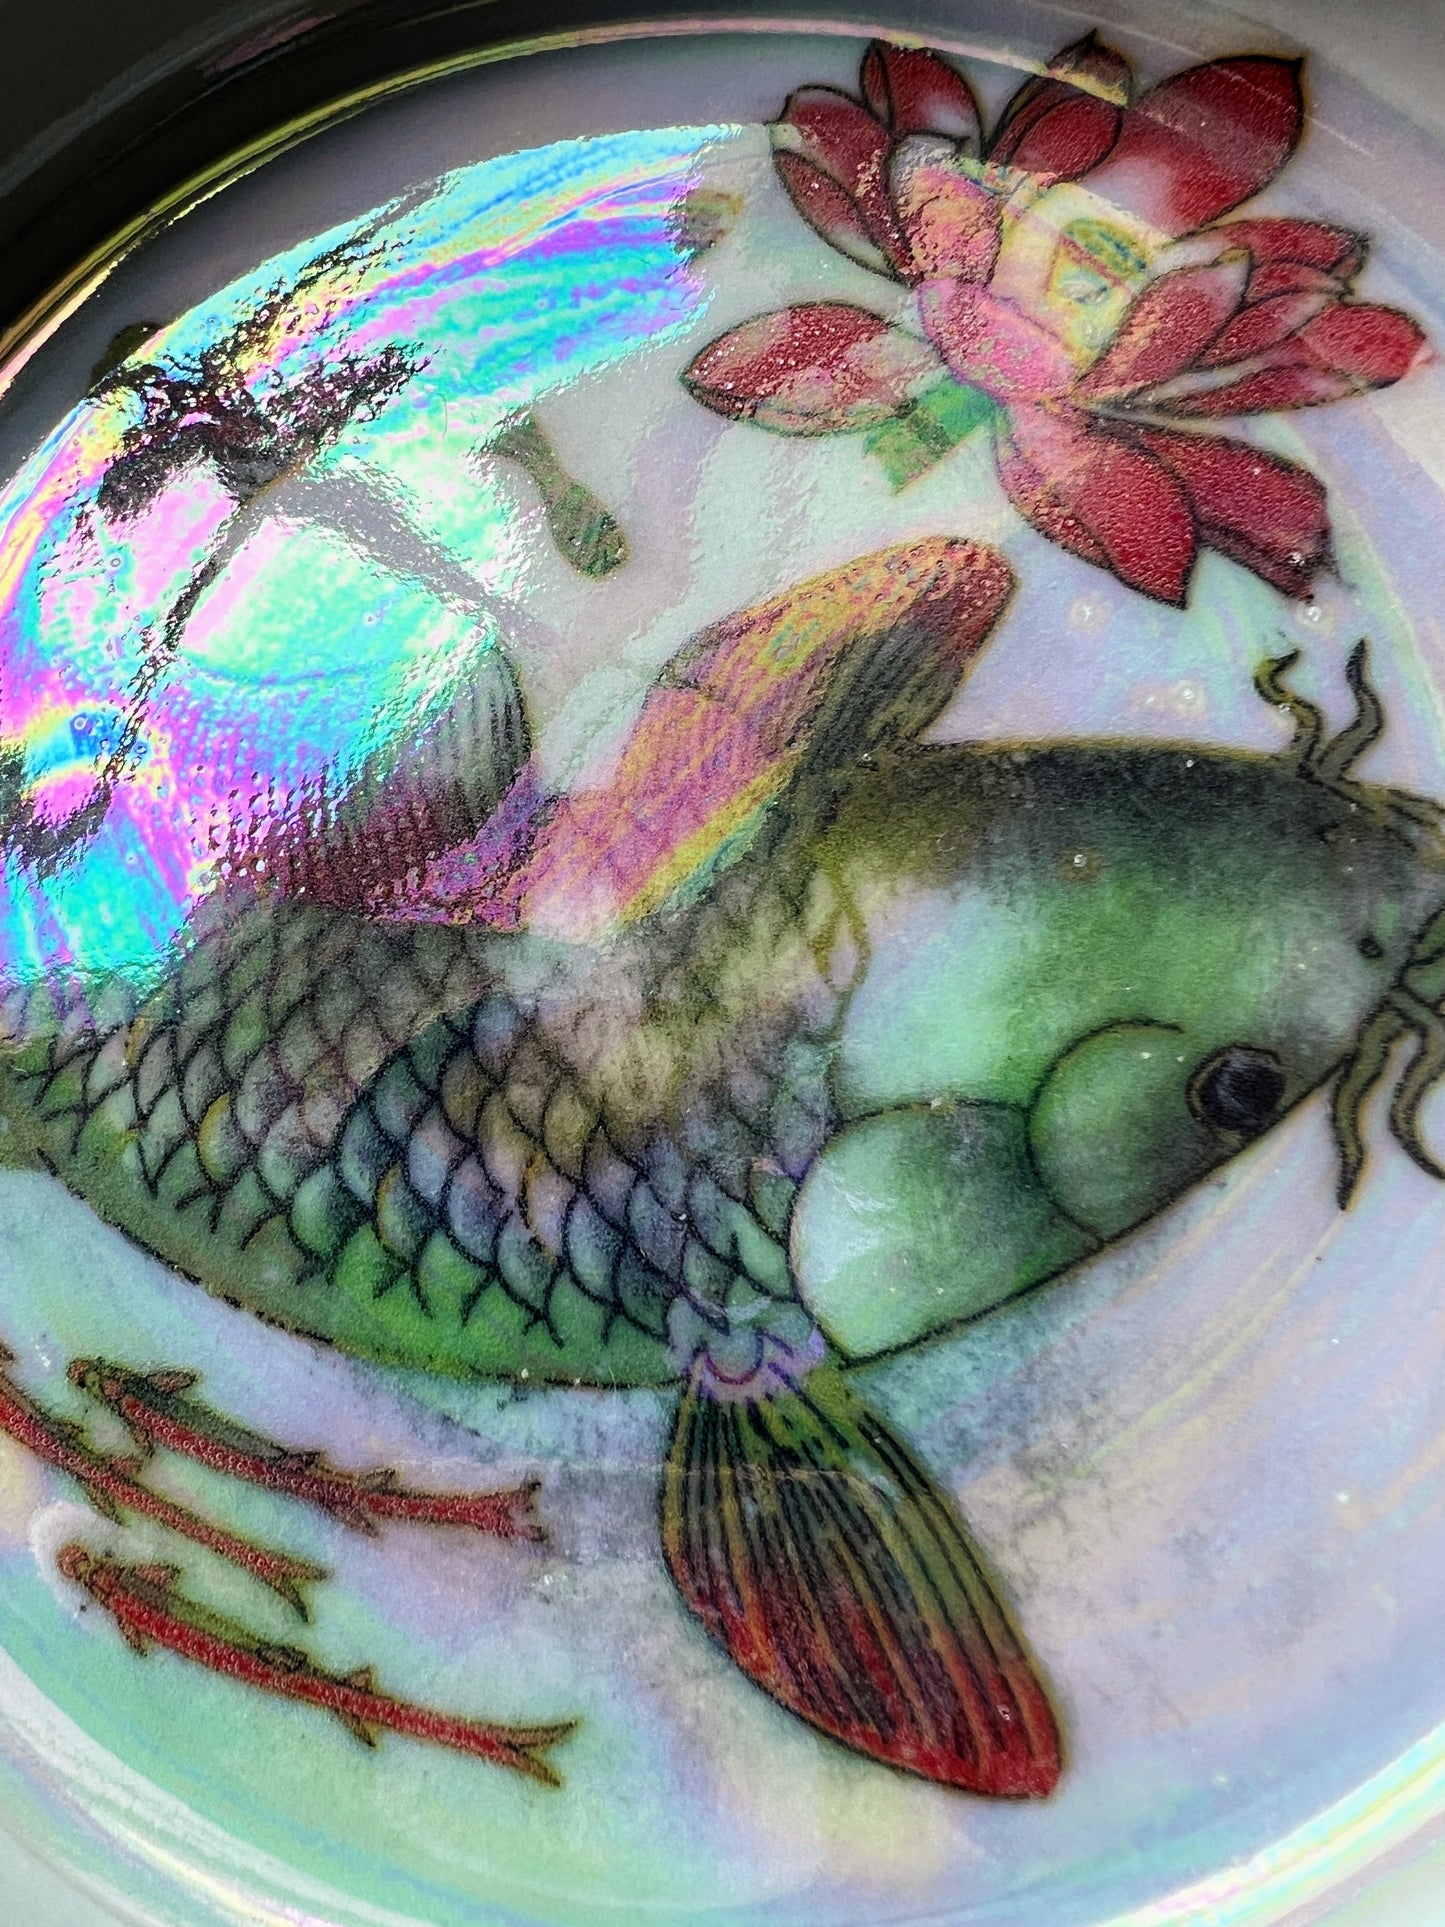 Kio Fish Tray Irridescent Tray Gold Altar Tray Witchy Jewelry Dish